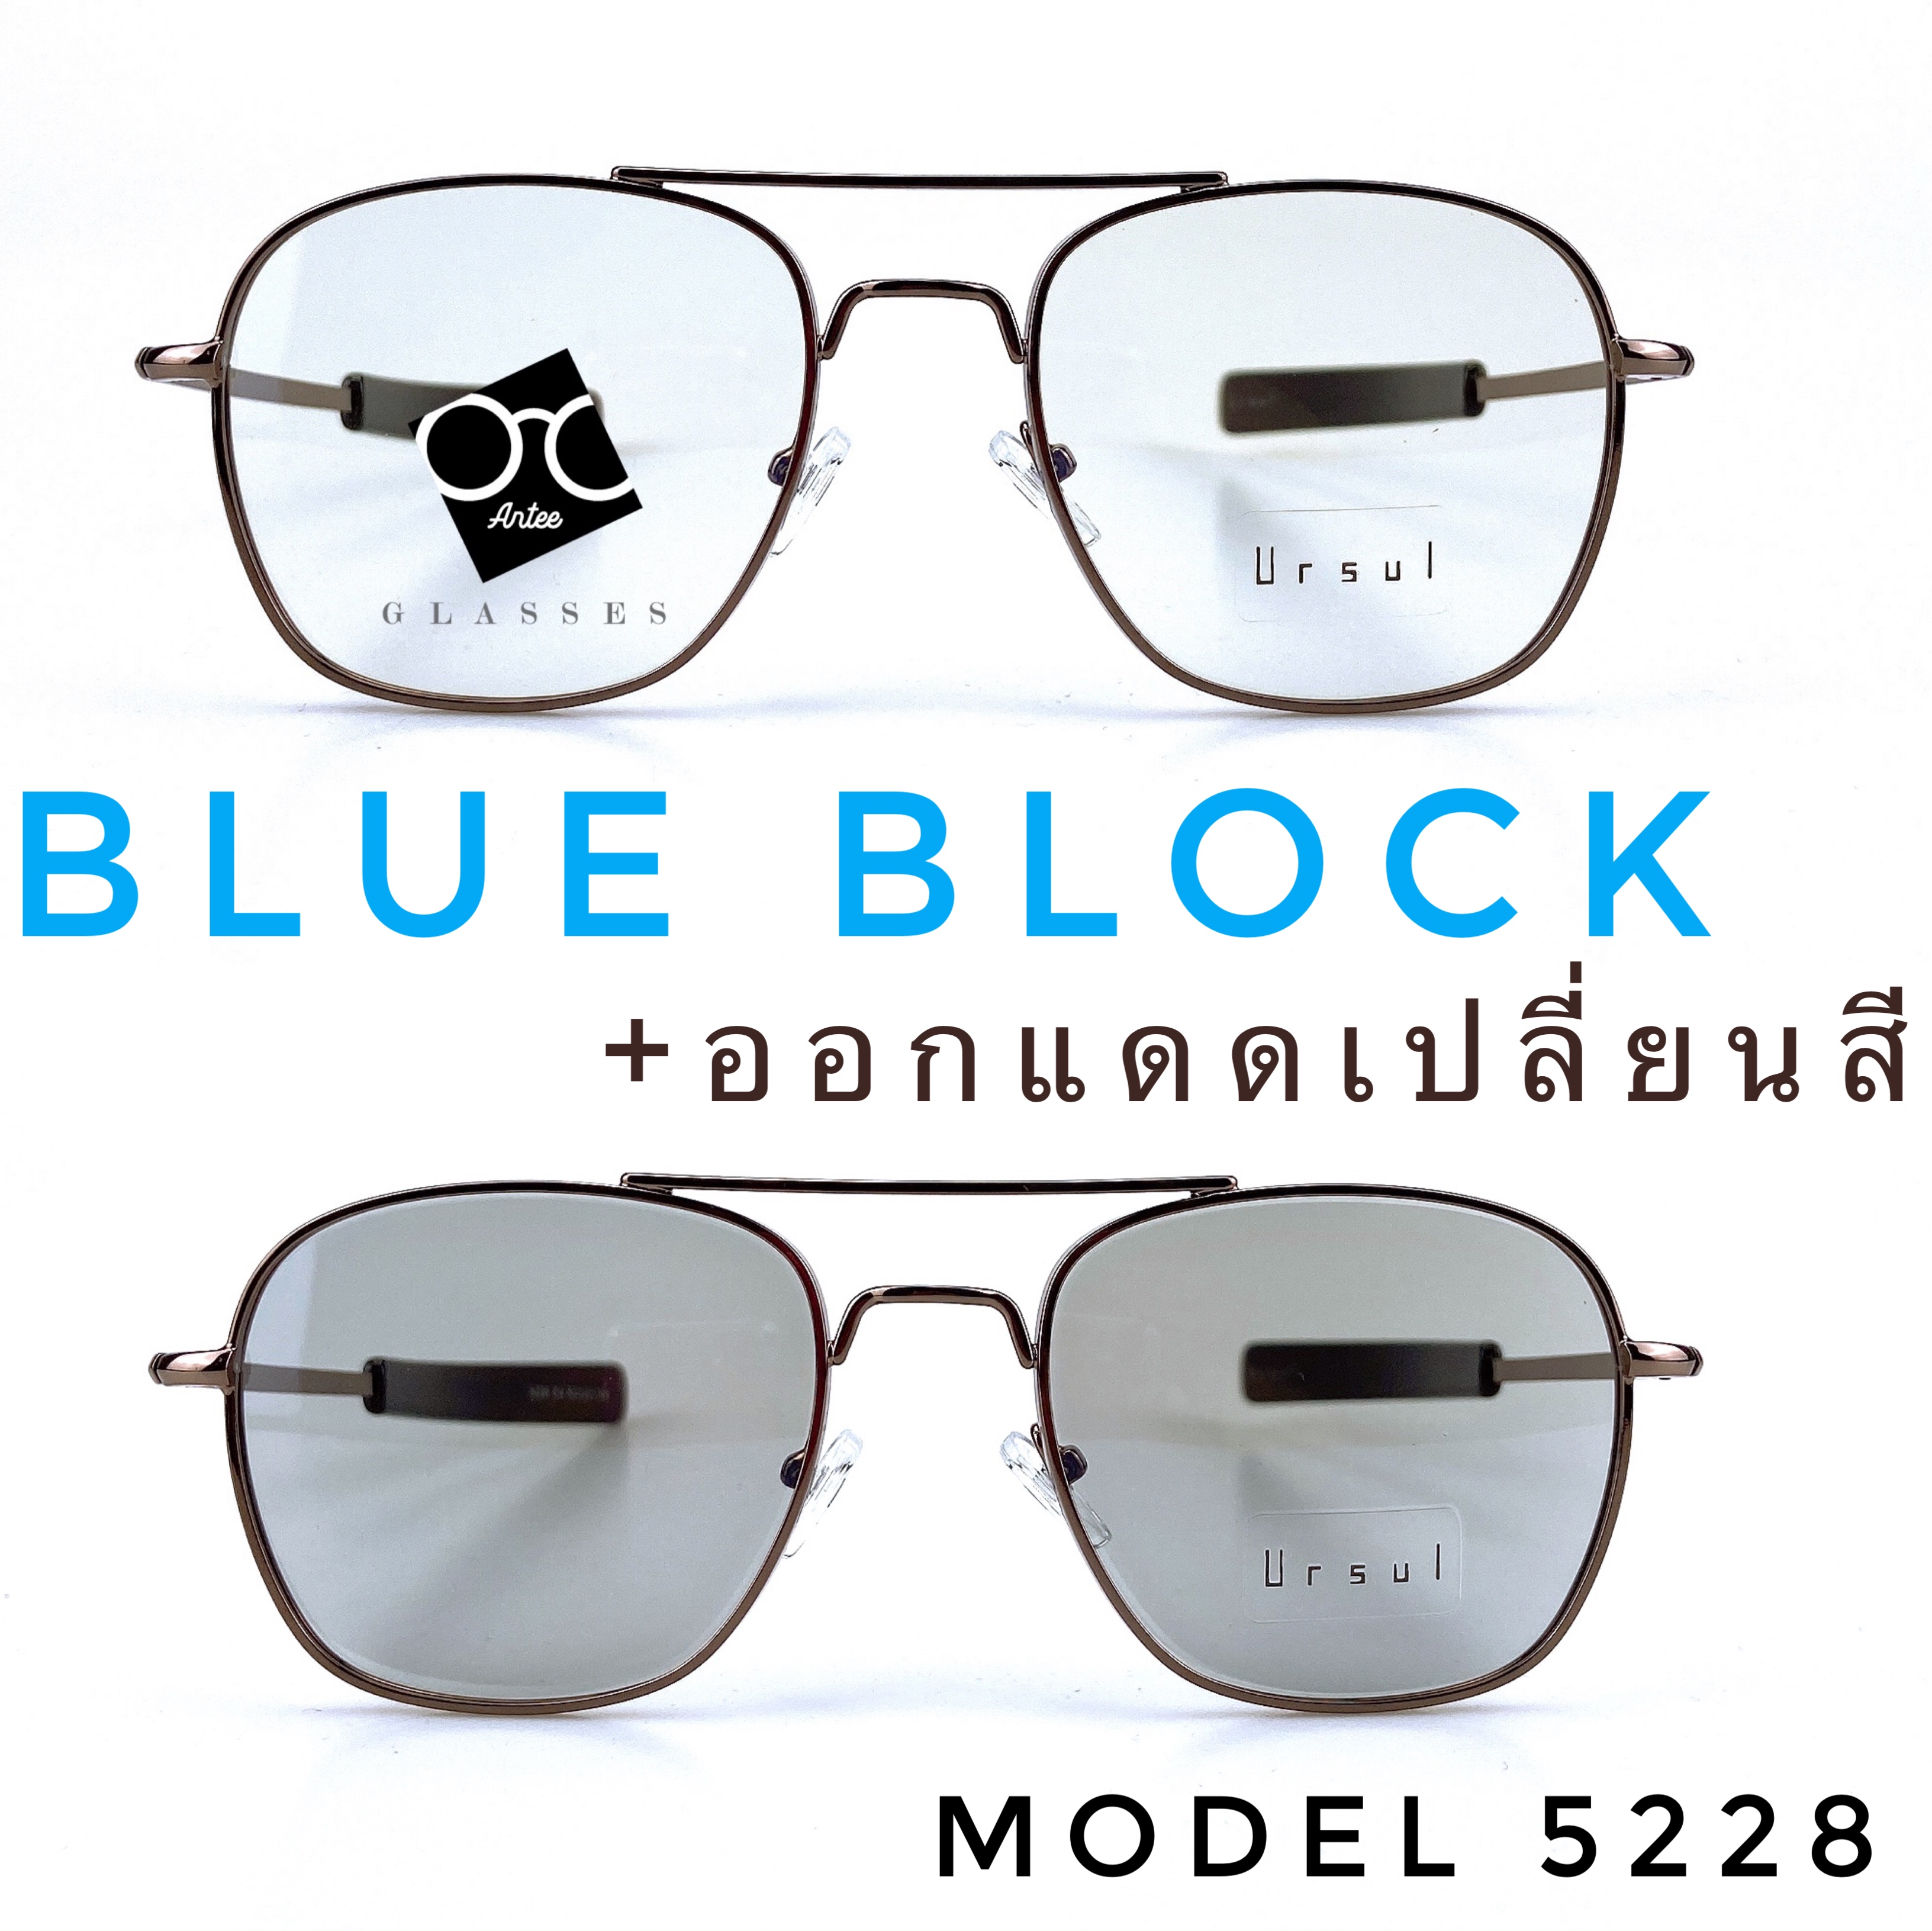 ‼️แว่นตาSuperBlueBlock+Autoเปลี่ยนสี‼️แว่น แว่นตา แว่นตากรองแสง แว่นกรองแสง แว่นกรองแสงสีฟ้า แว่นกรองแสงออโต้ แว่นกันแดด